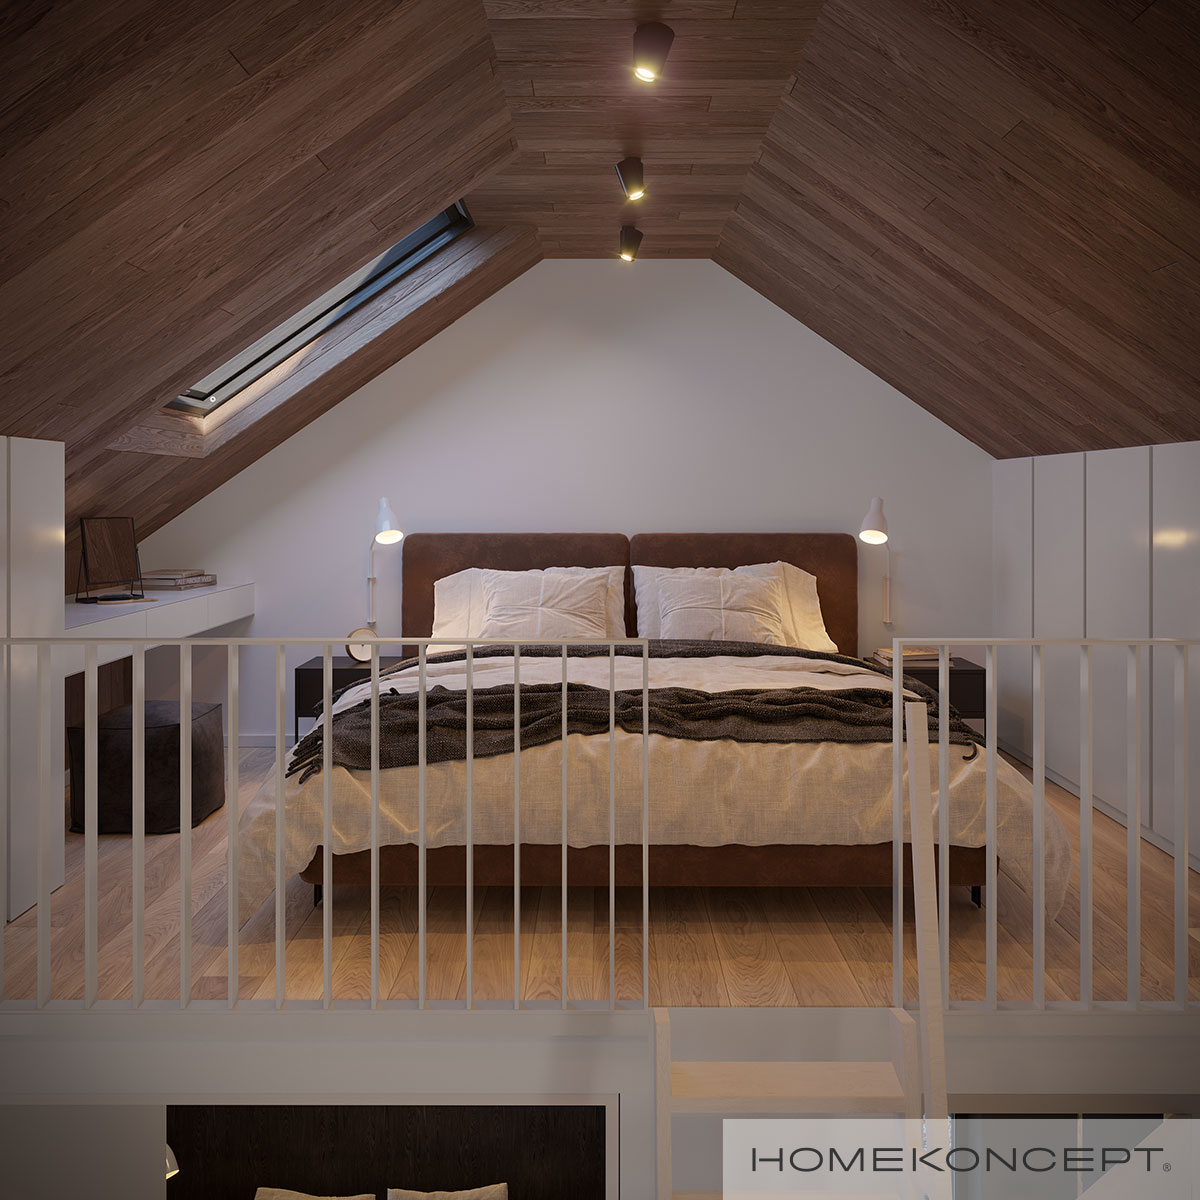 Sypialnia na poddaszu z drewnianym sufitem - styl rustykalny w domu letniskowym HOMEKONCEPT 85 DL